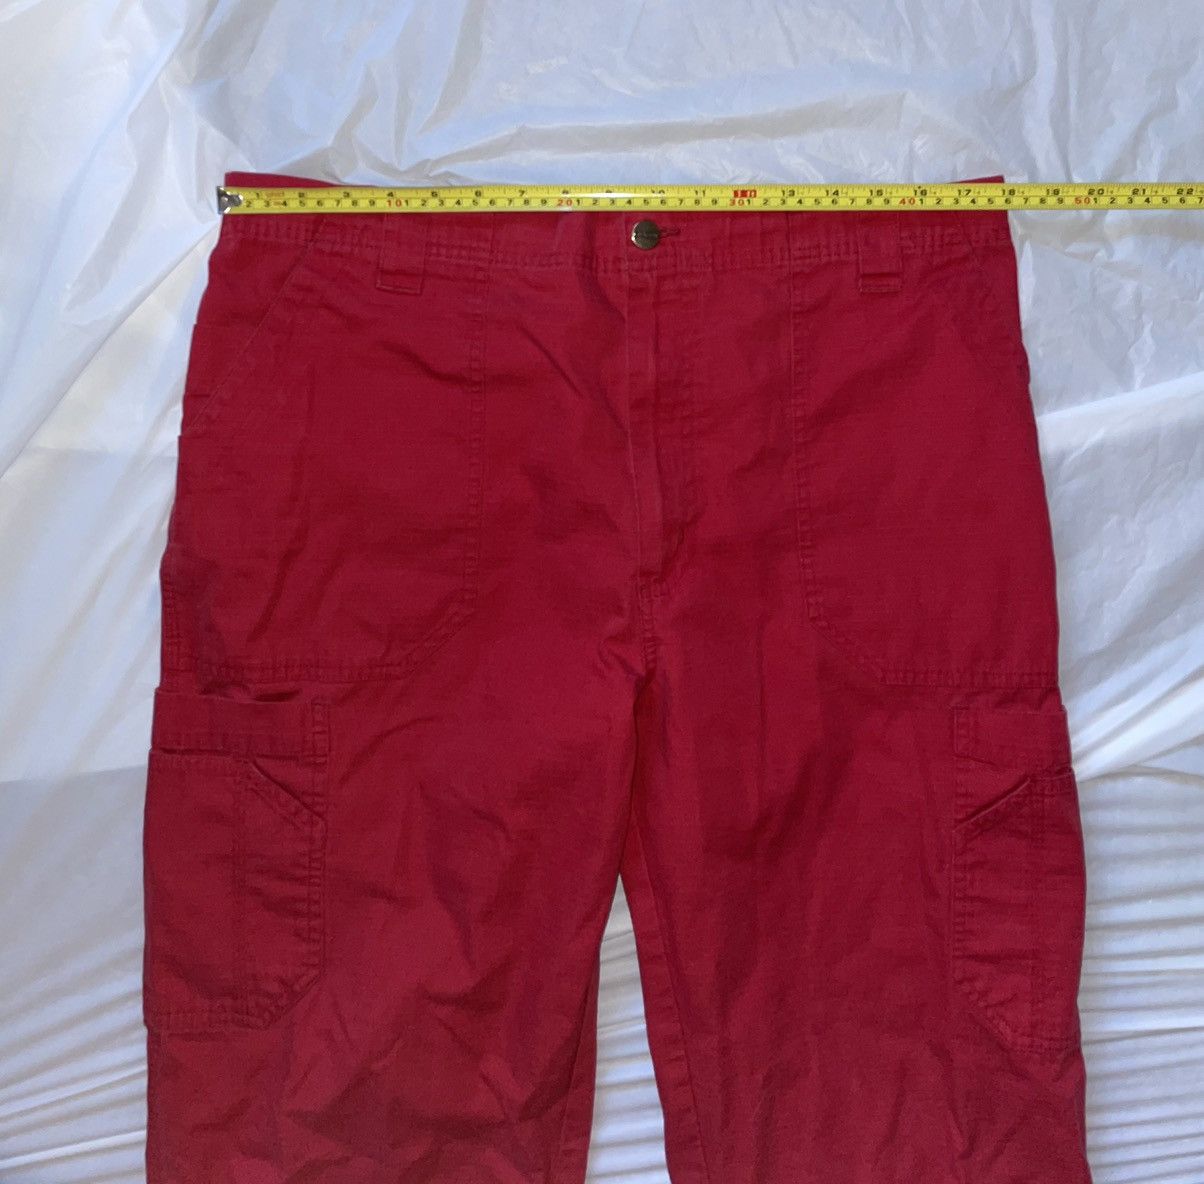 Carhartt Carhartt Lightweight Red Cargo Pants Size US 36 / EU 52 - 9 Thumbnail